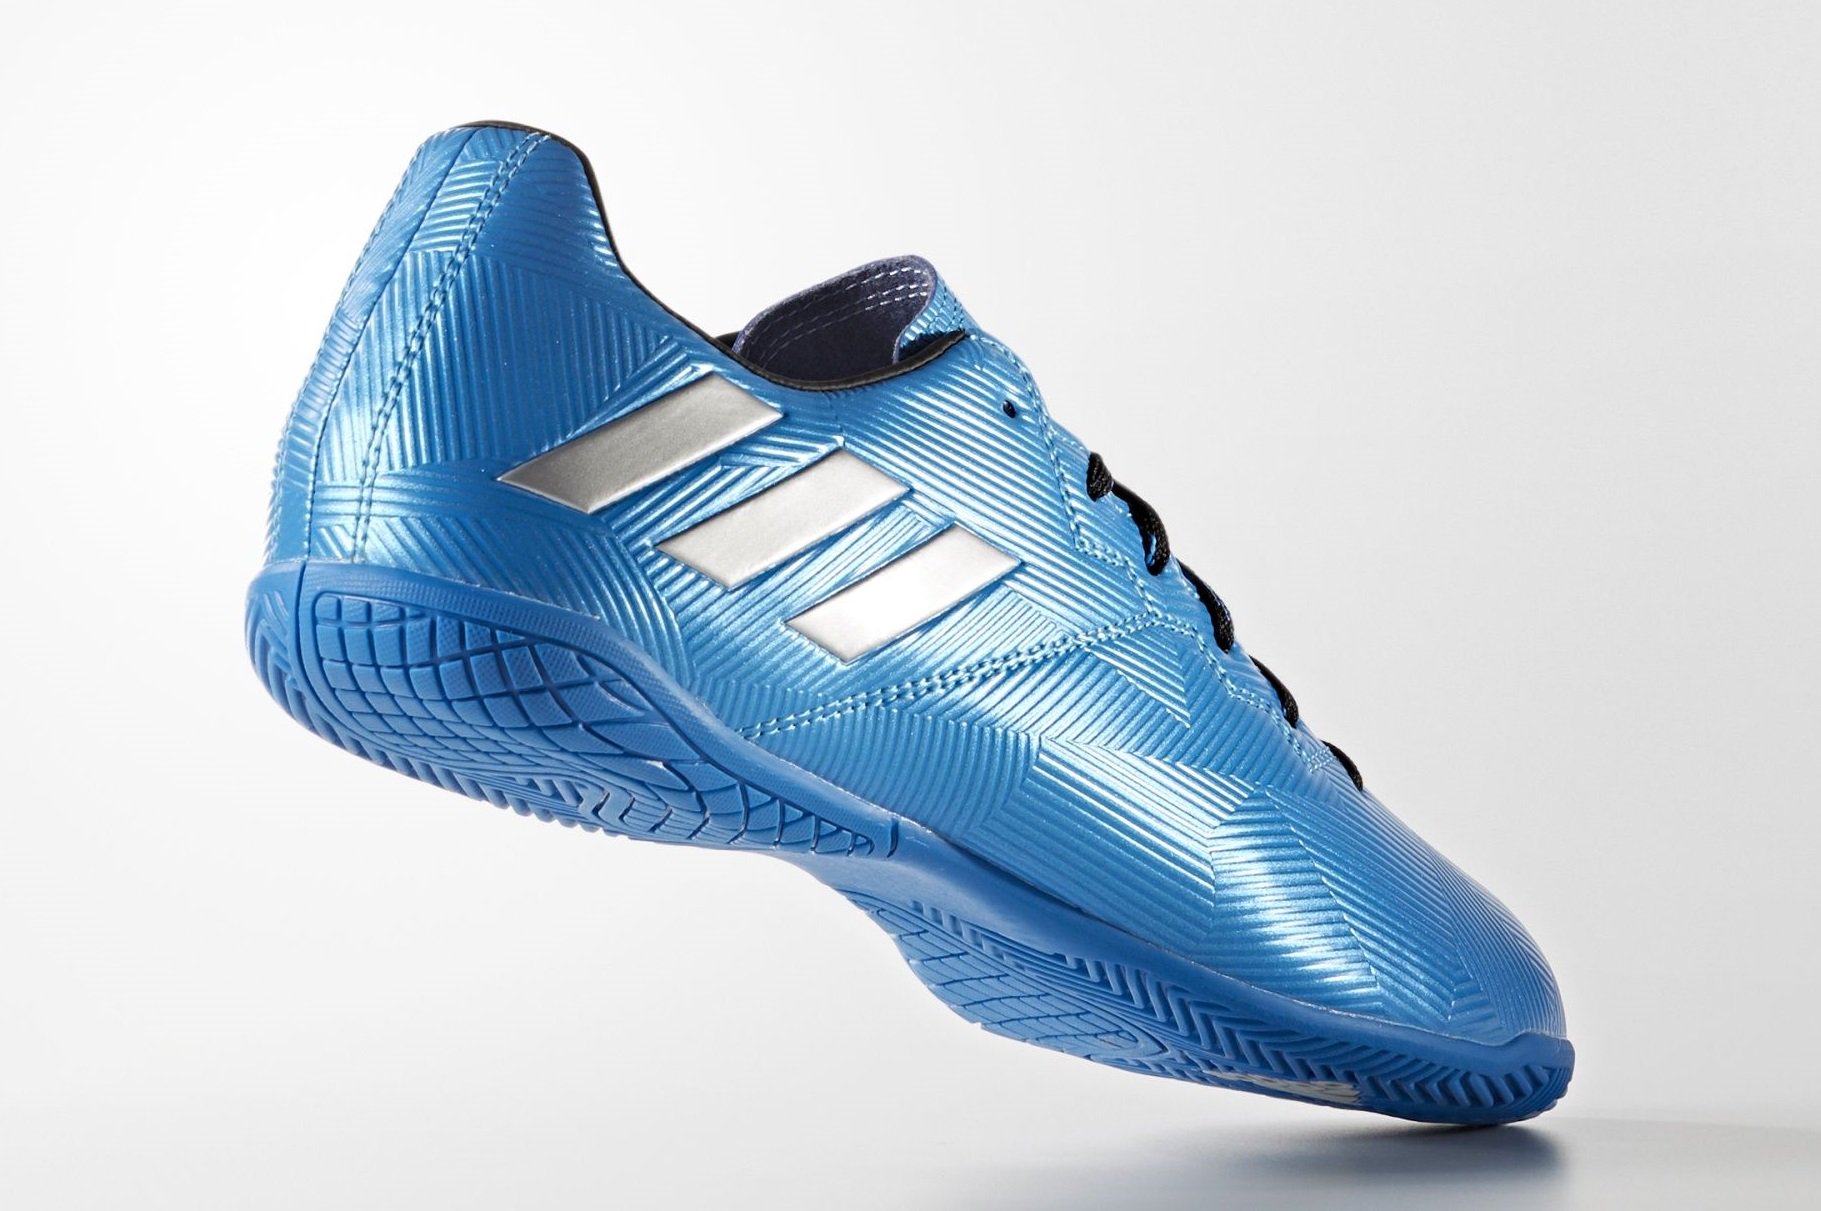 Boot Cleat on Twitter: Messi 16.4 Indoor 16-17 Blue Shoes #adidas # indoor https://t.co/JFhxfZM2iX https://t.co/CQXL8OCFU0" / Twitter